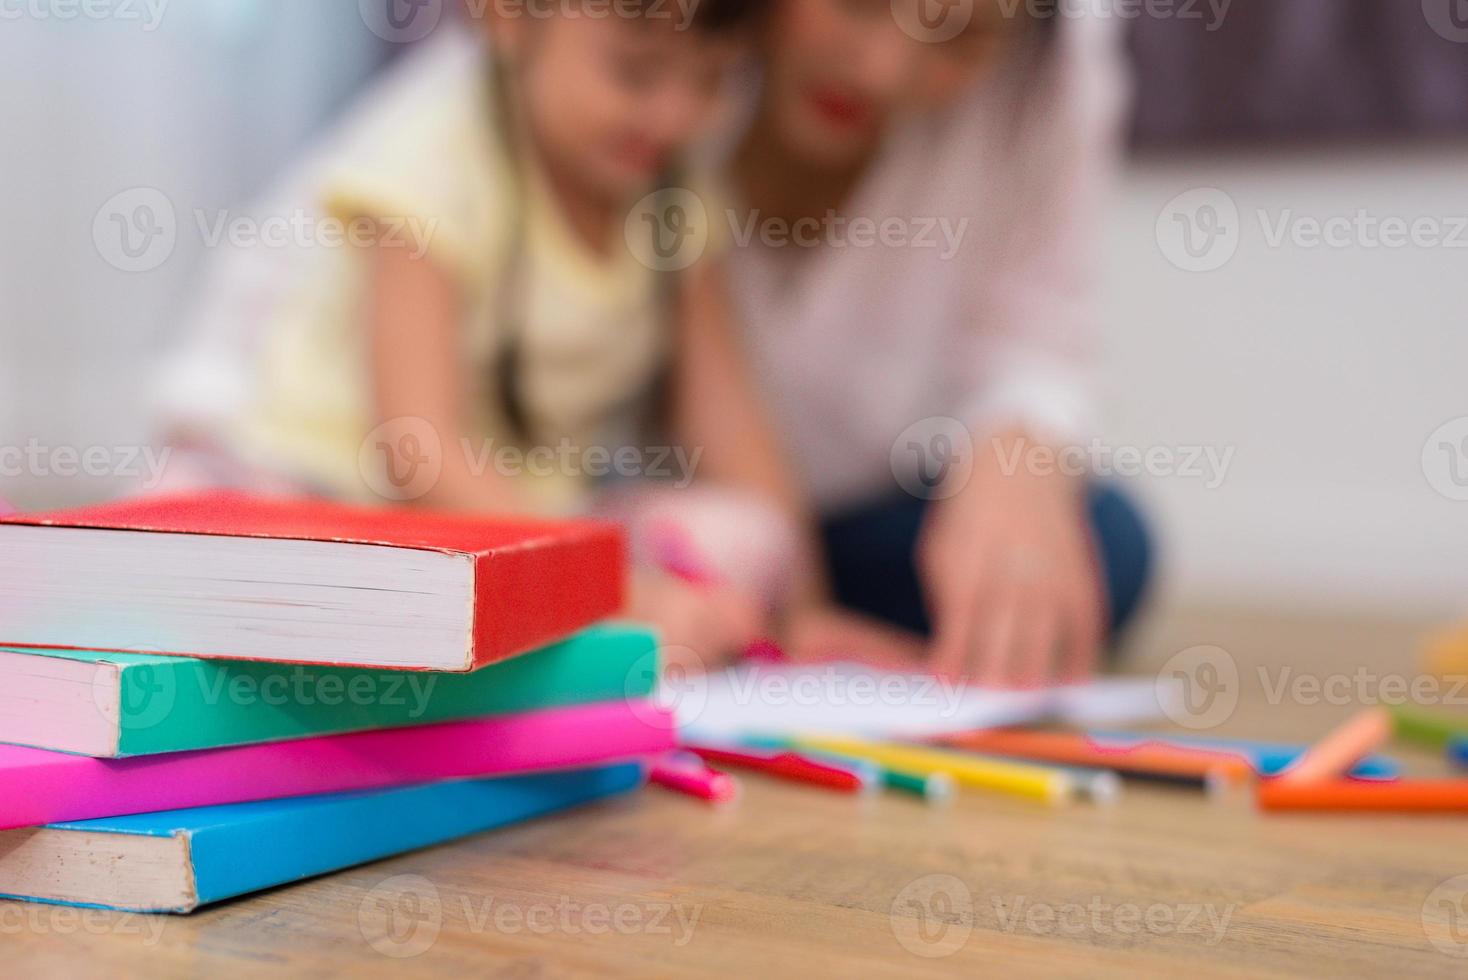 närbild av böcker och krita färg på golvet med mamma och barn bakgrund. tillbaka till skolan och konstutbildning inlärningskoncept. barn och lärartema foto